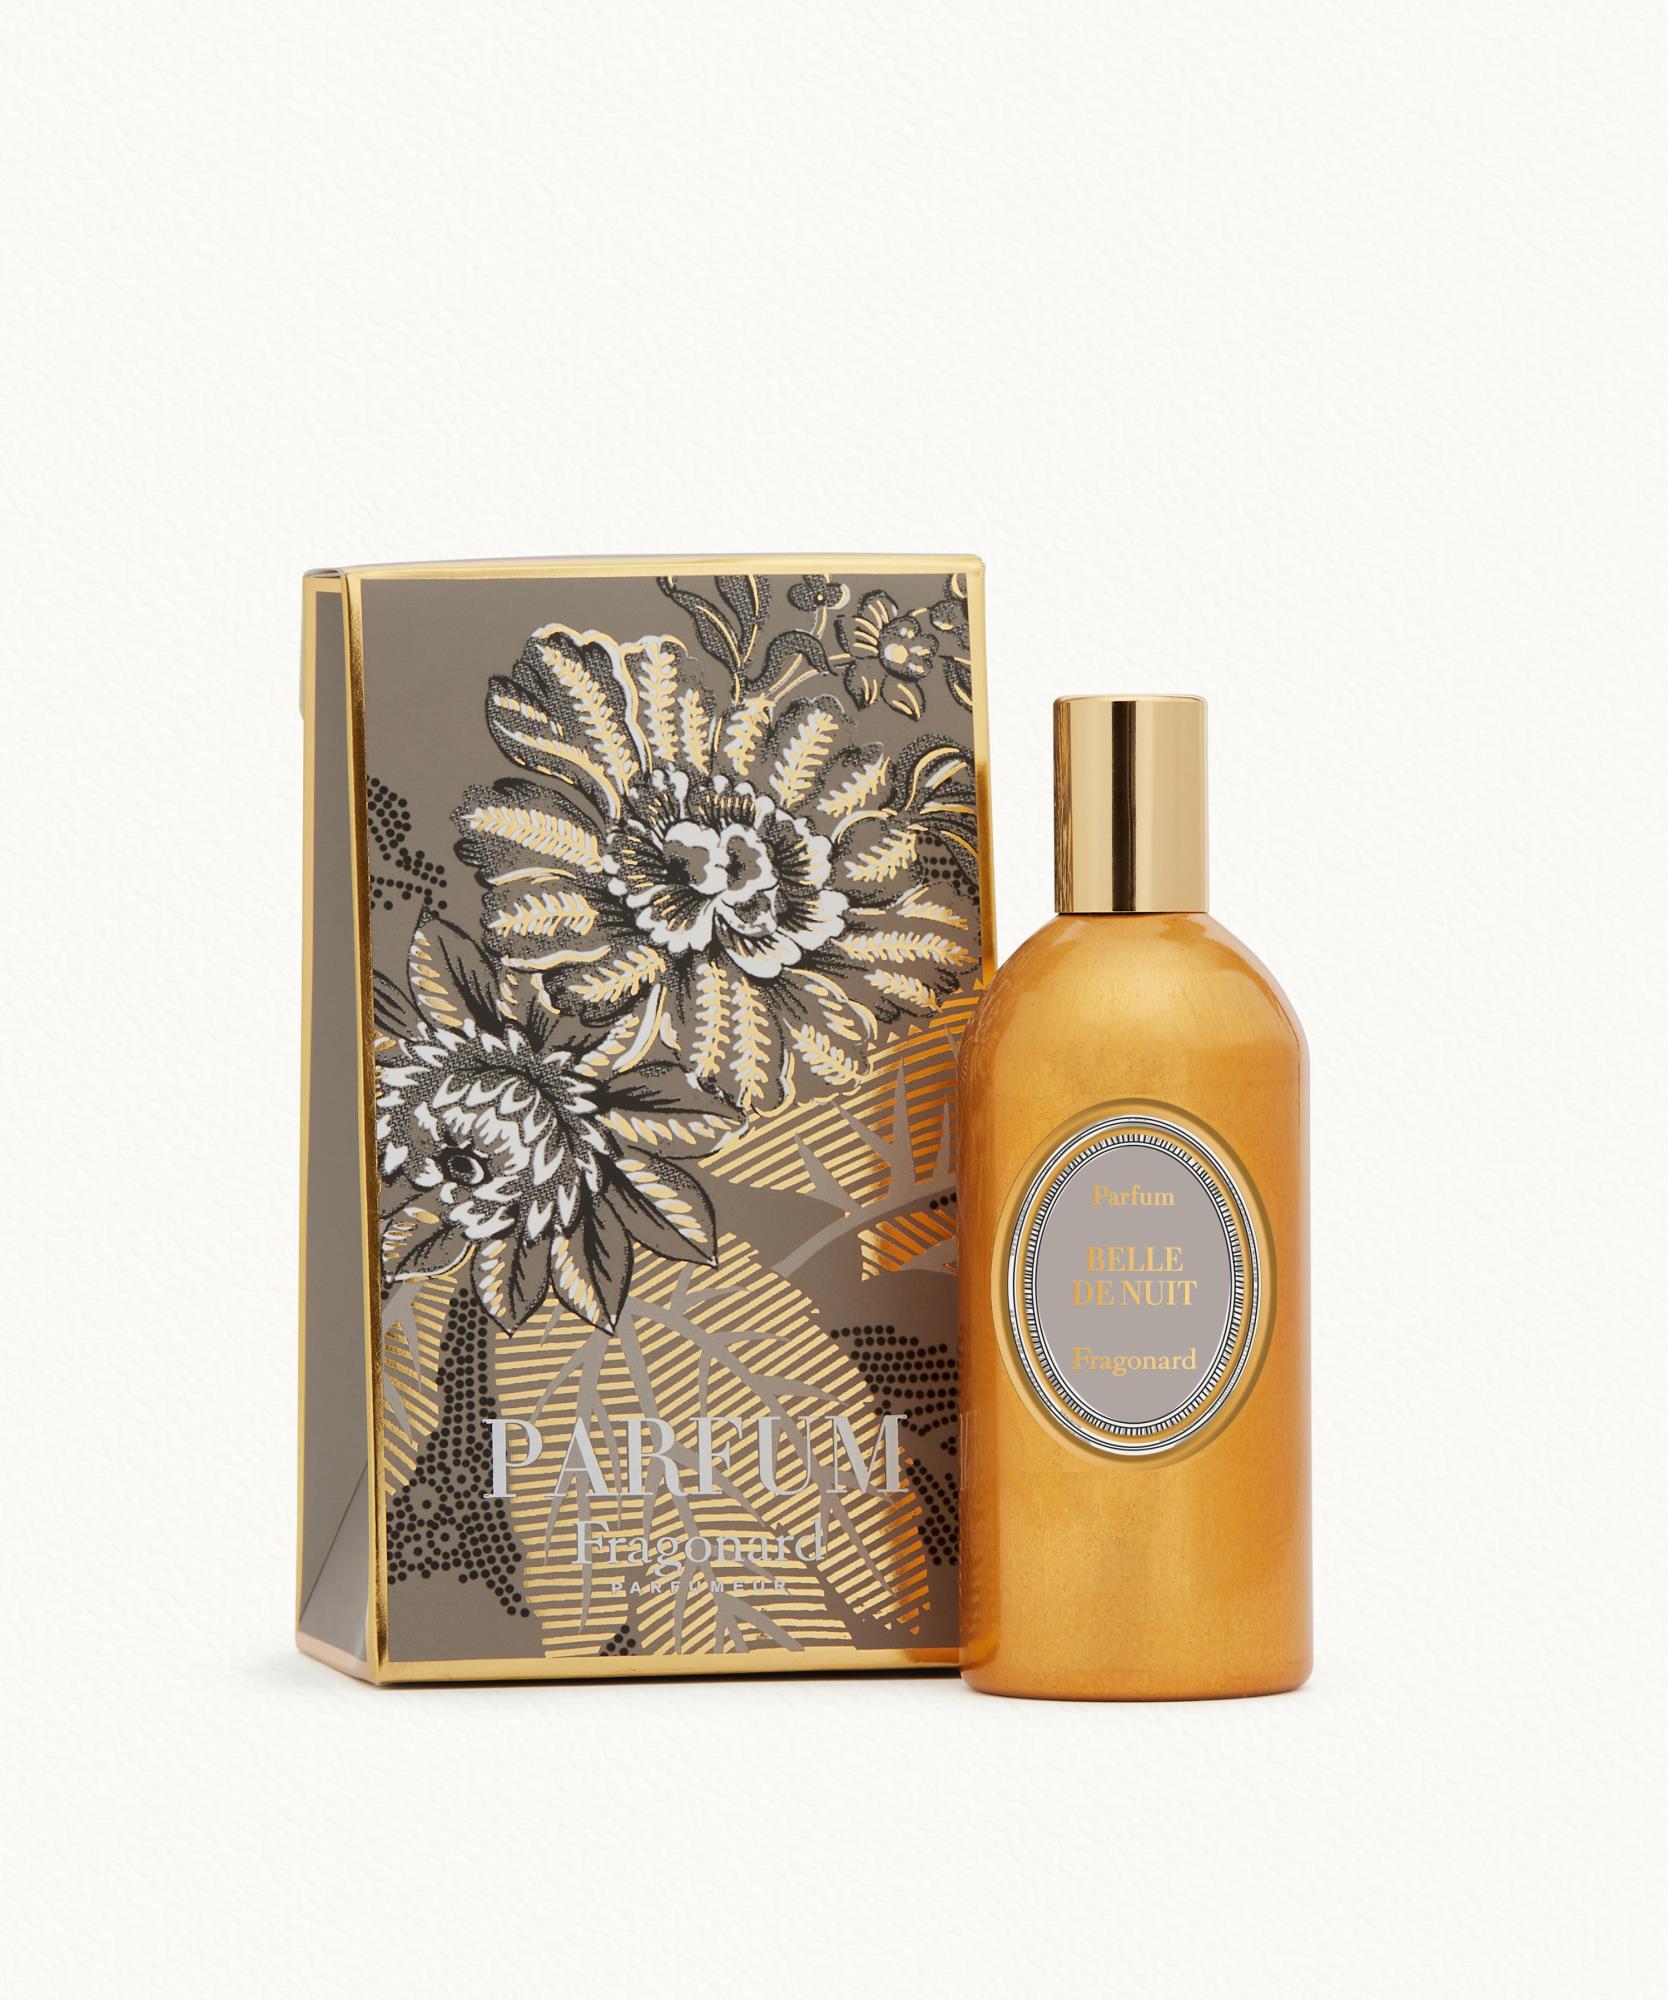 Belle de Nuit Parfum flacon alu doré vapo 120 ml Fragonard - 99,00 €